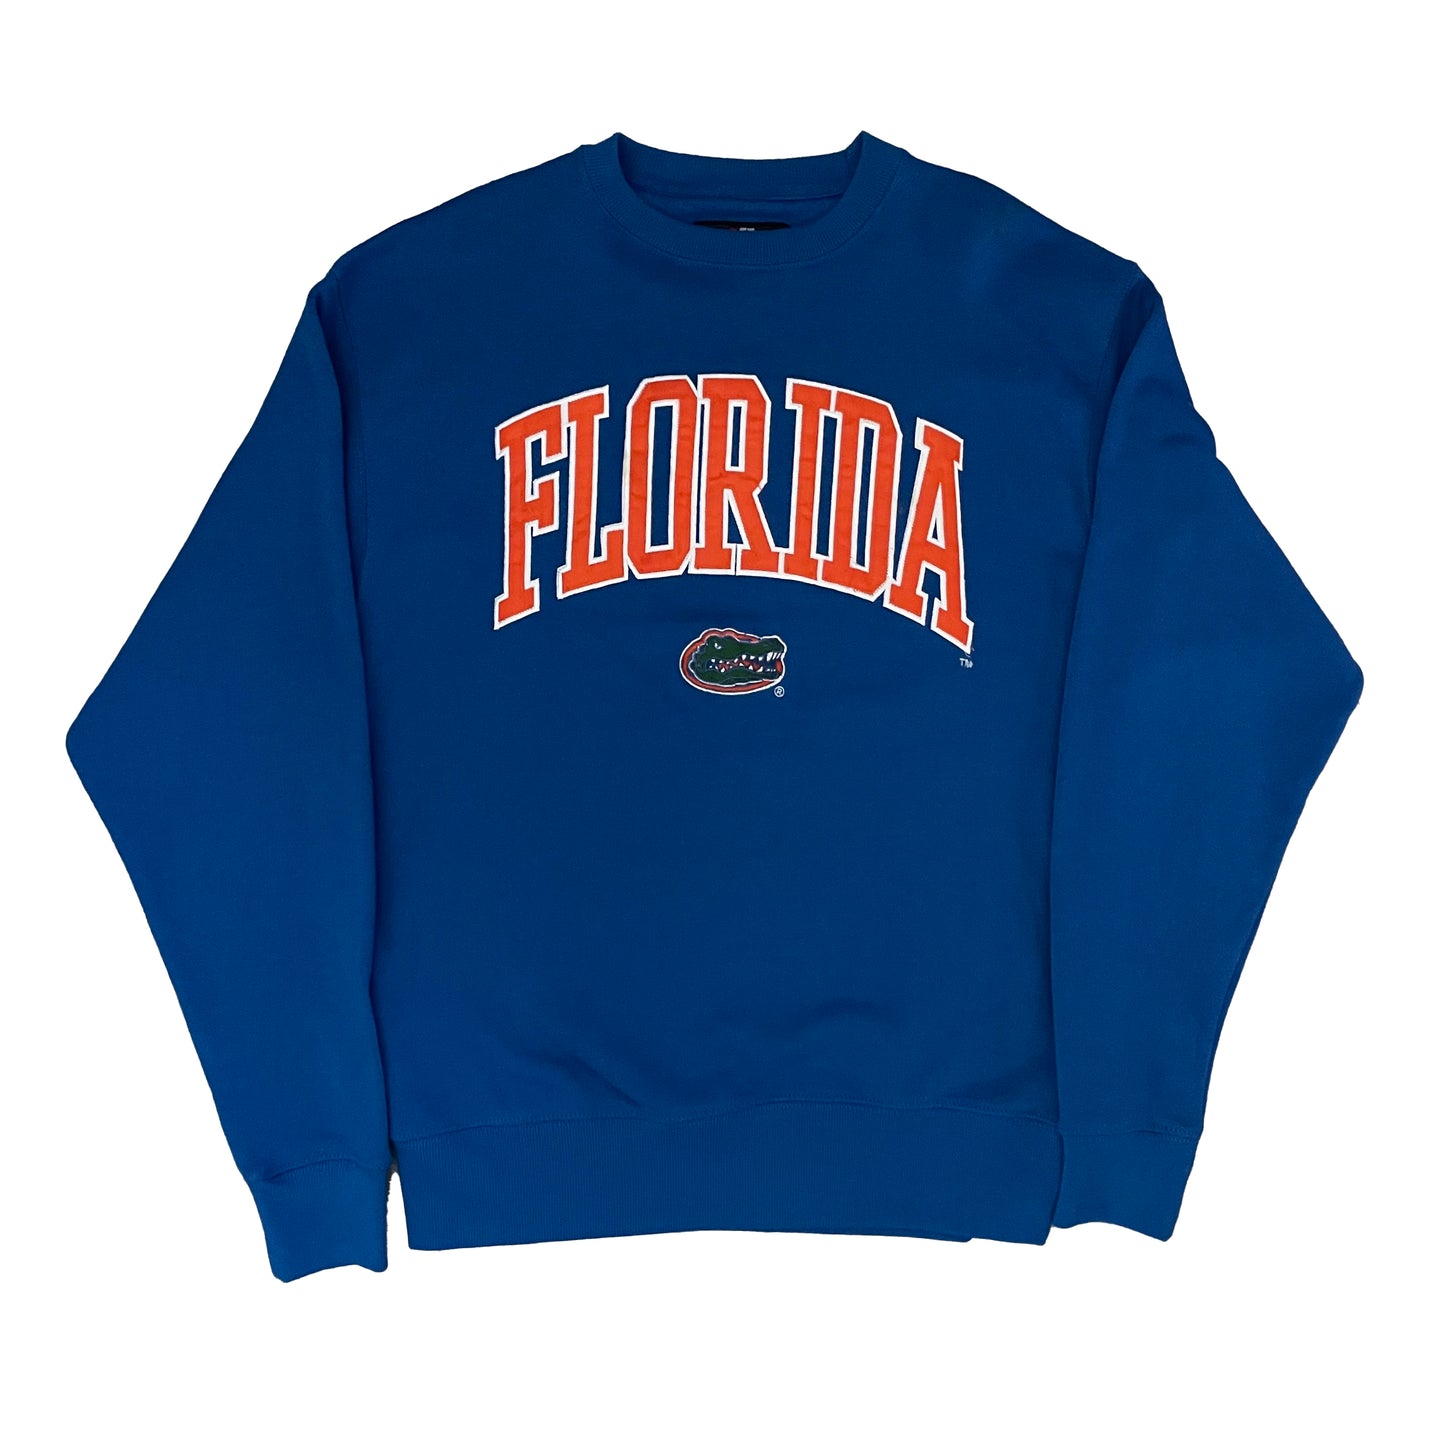 Florida Gators UF EMBROIDERED sweatshirt size LARGE